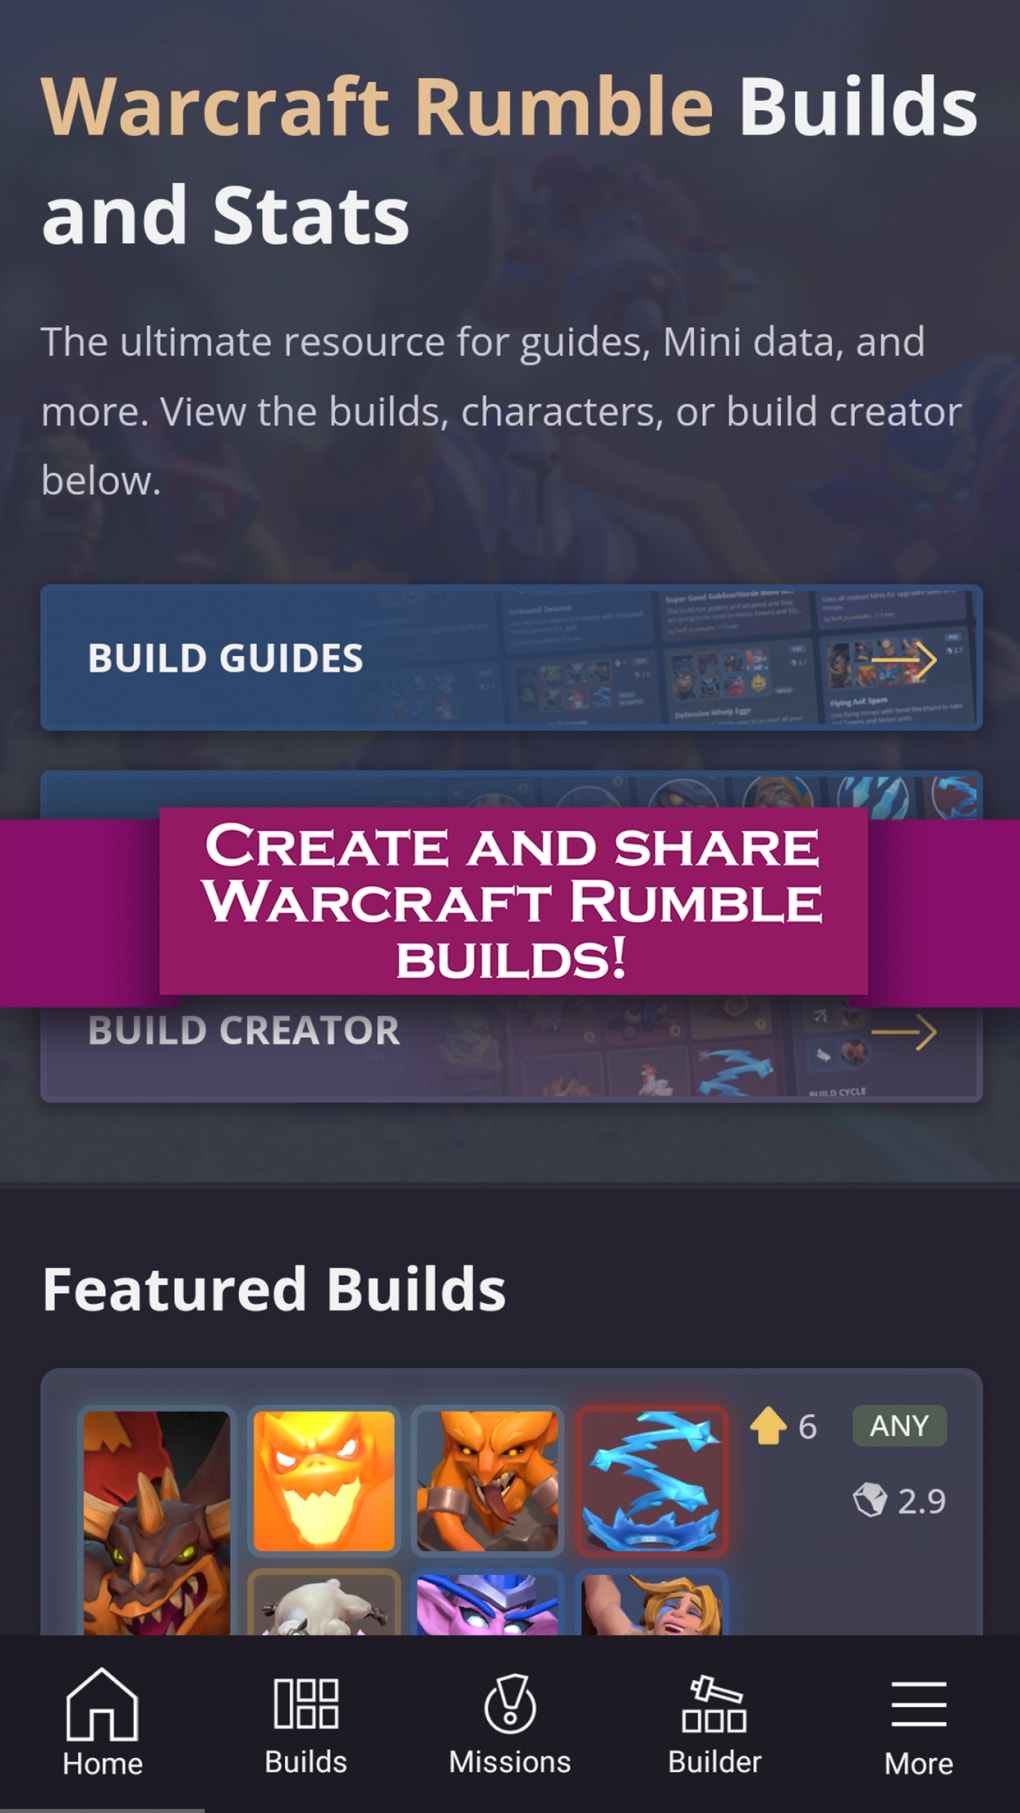 A reserva de Warcraft Rumble na Apple App Store já está disponível